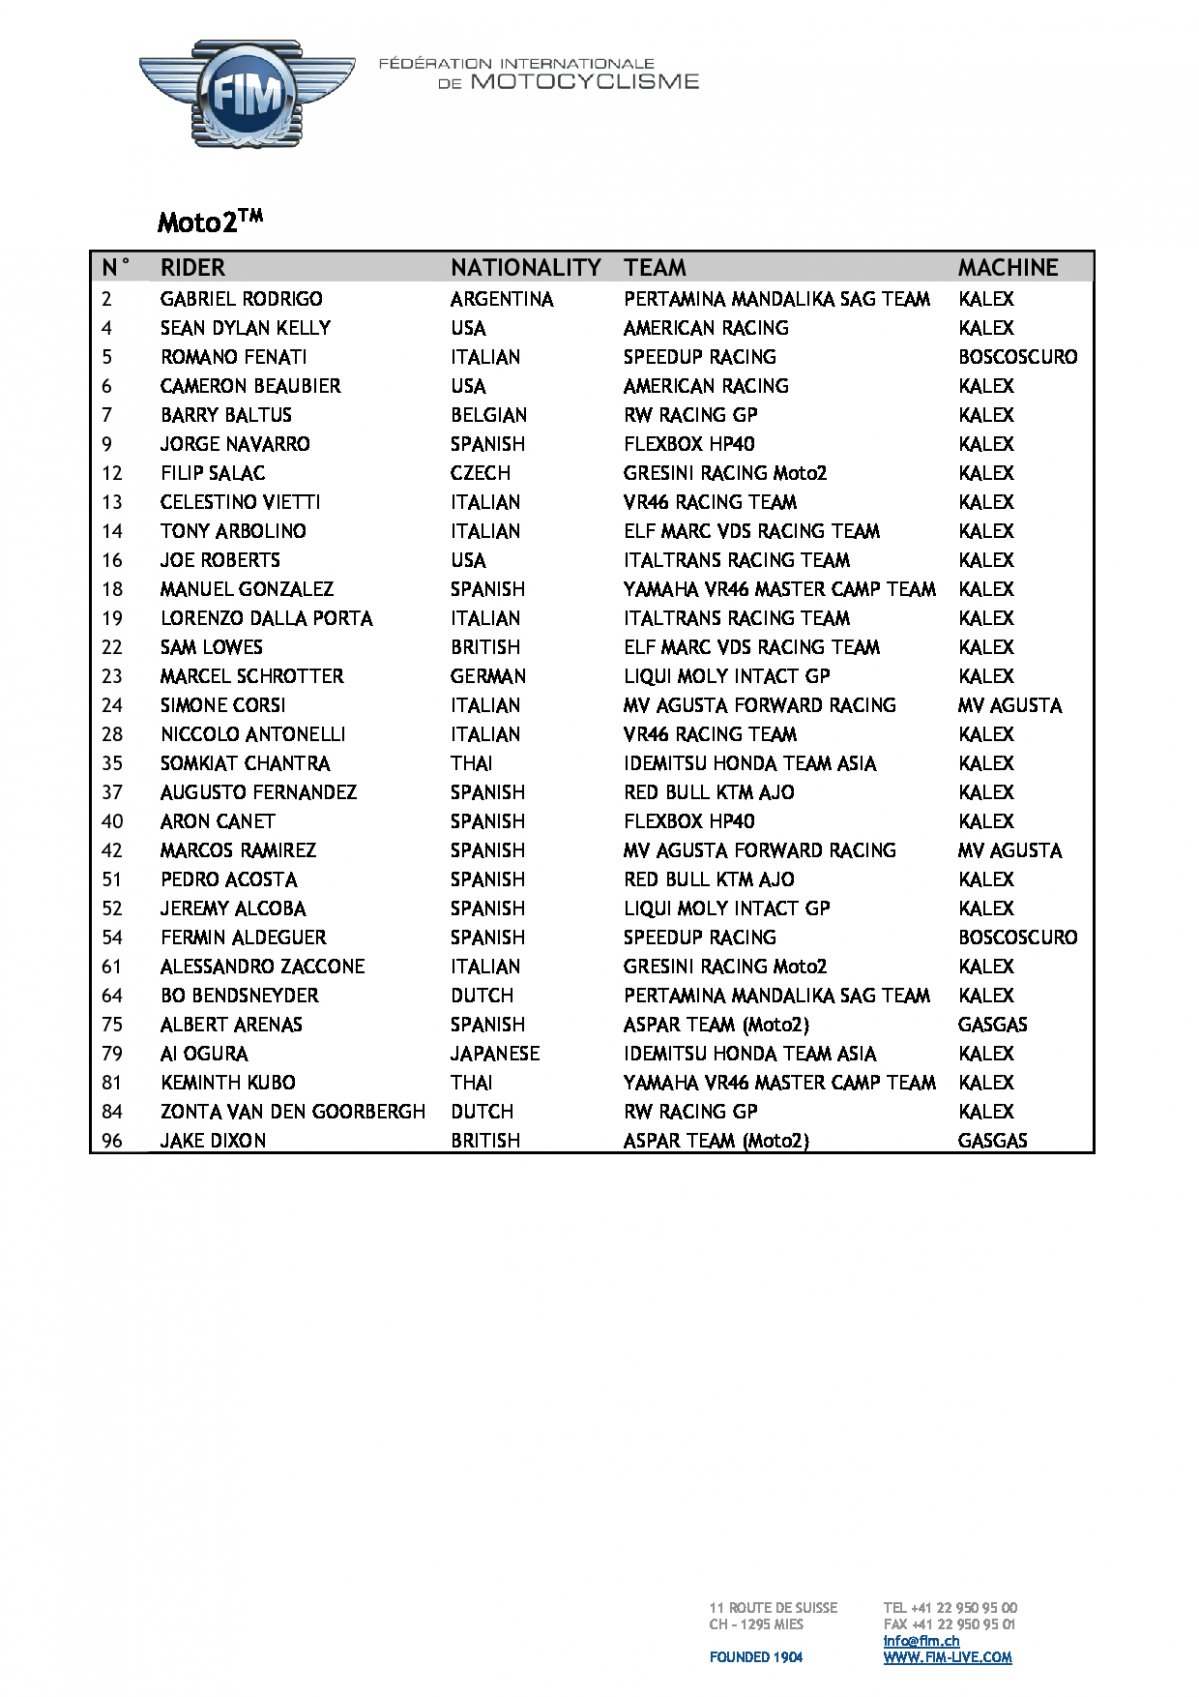 Список участников Мото Гран-При, класс Moto2